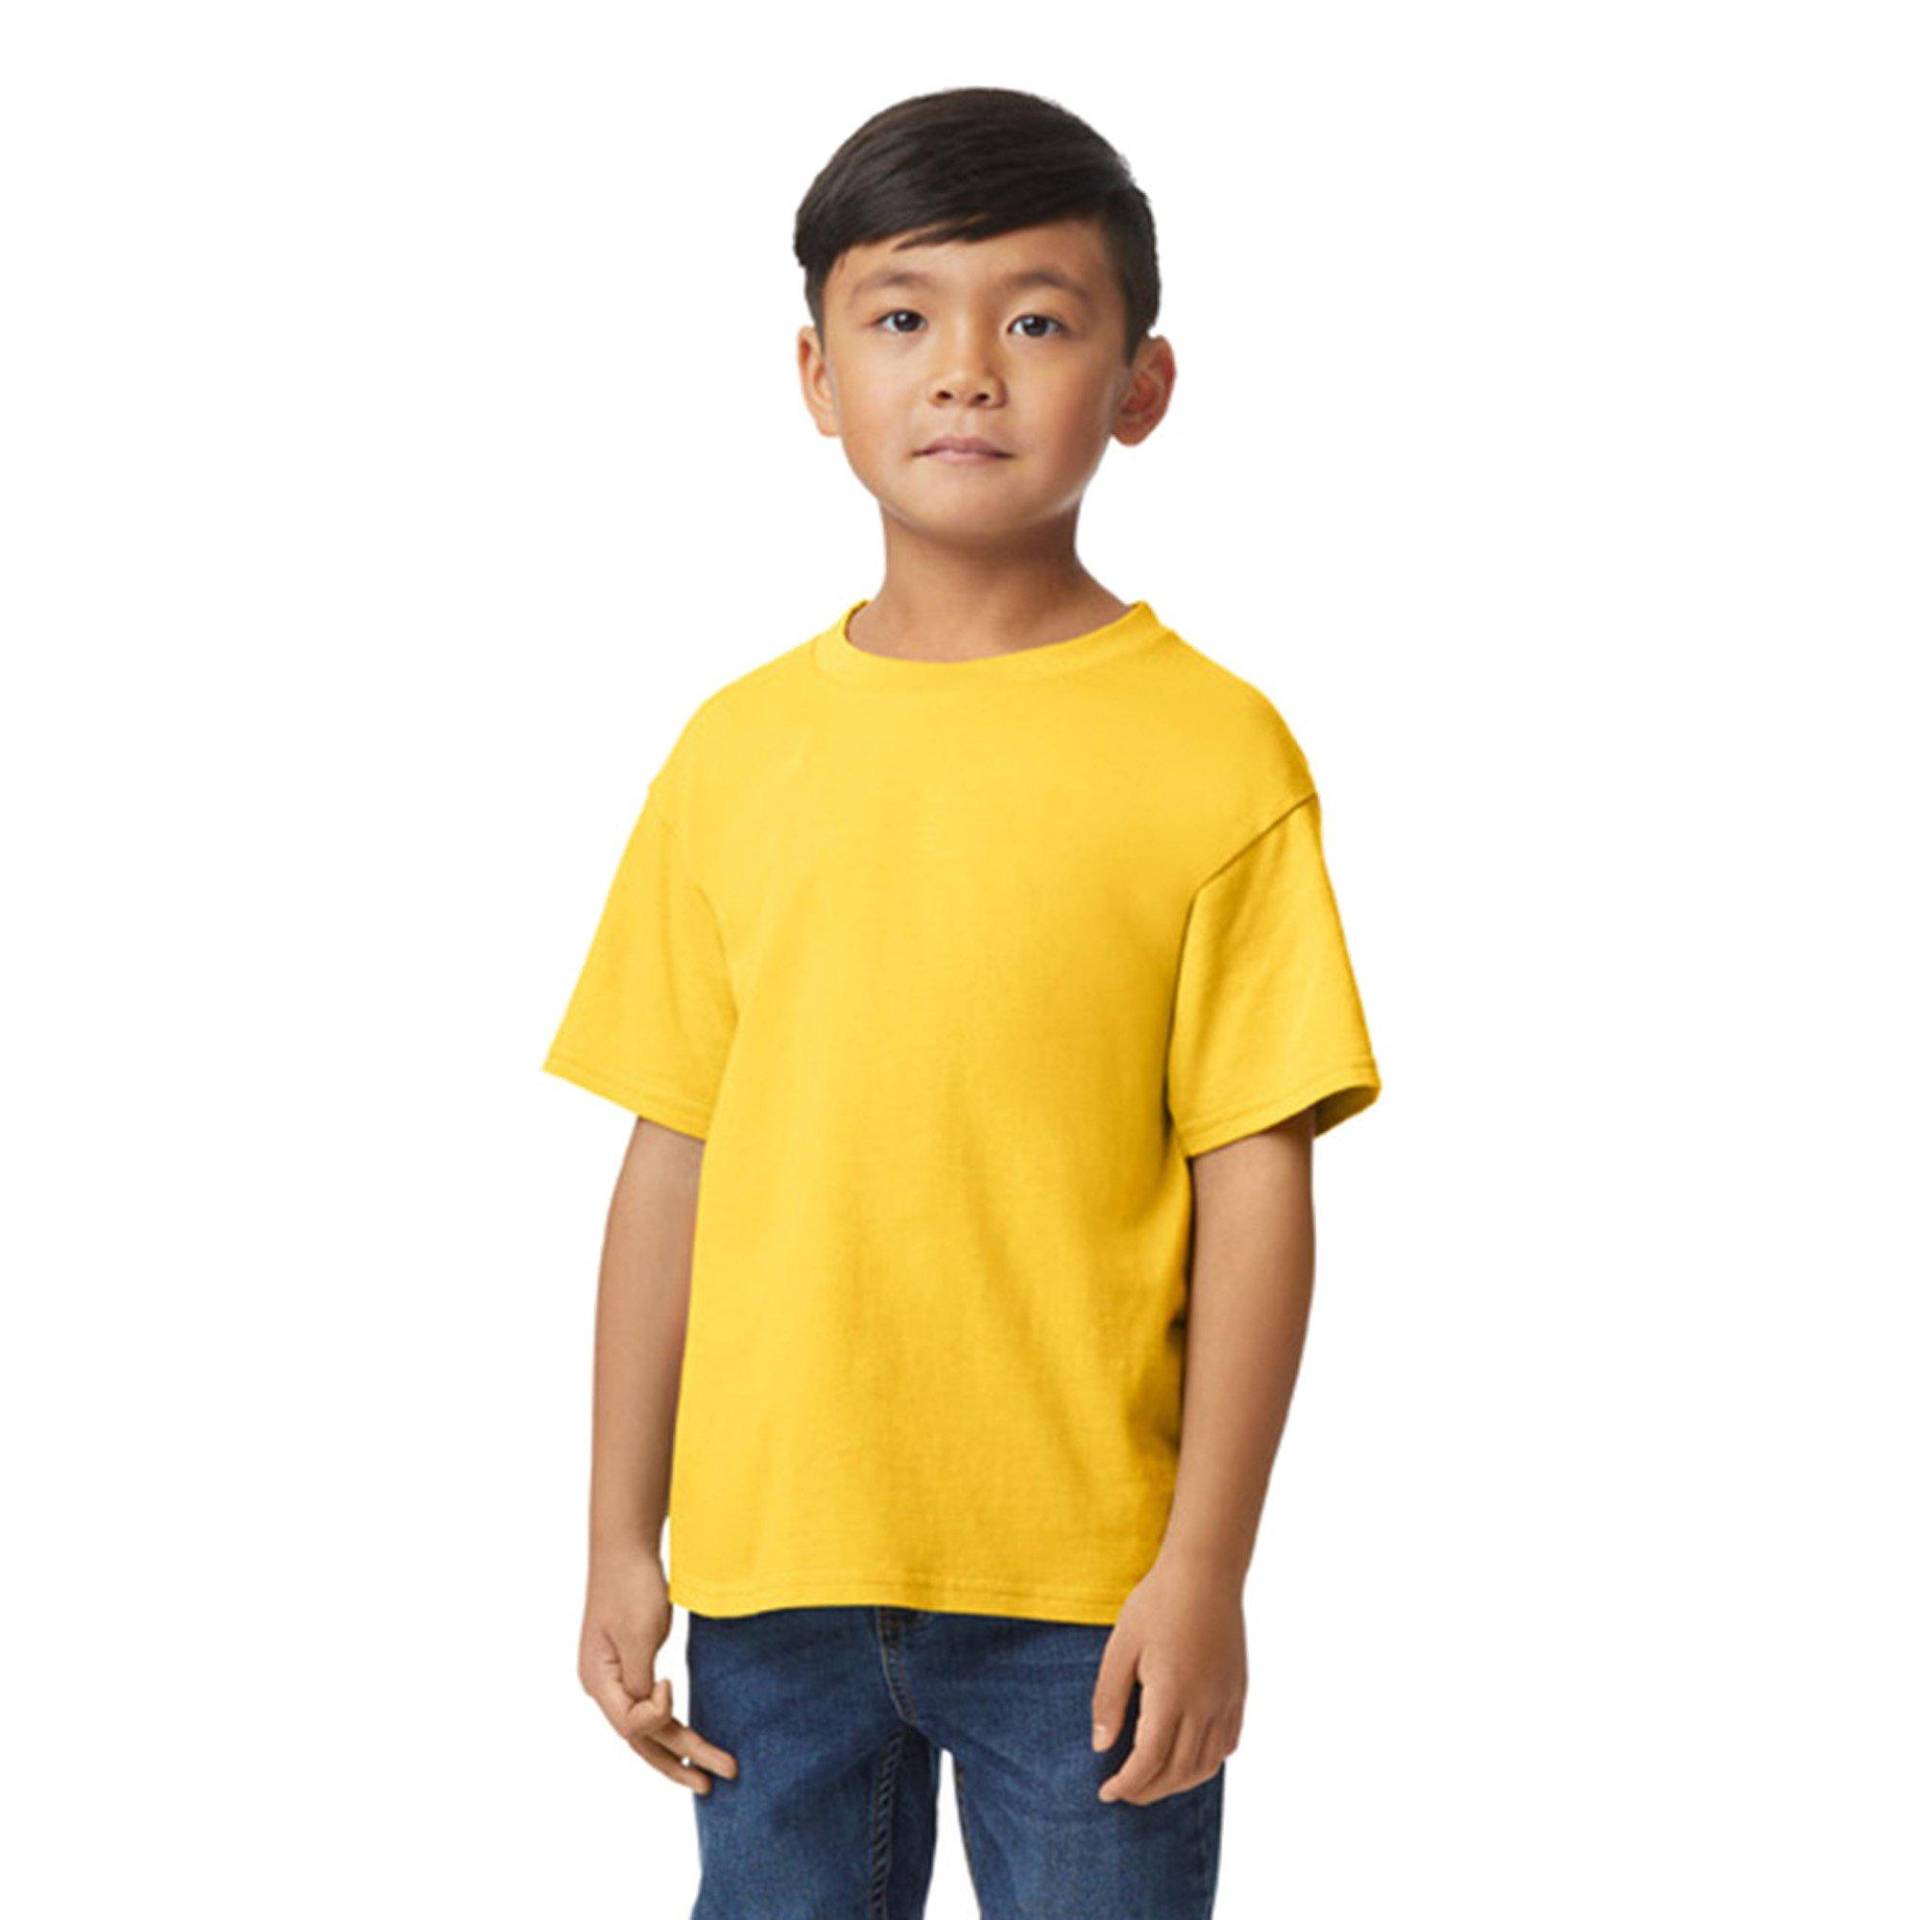 Softstyle Tshirt Mädchen Gelb Bunt M von Gildan